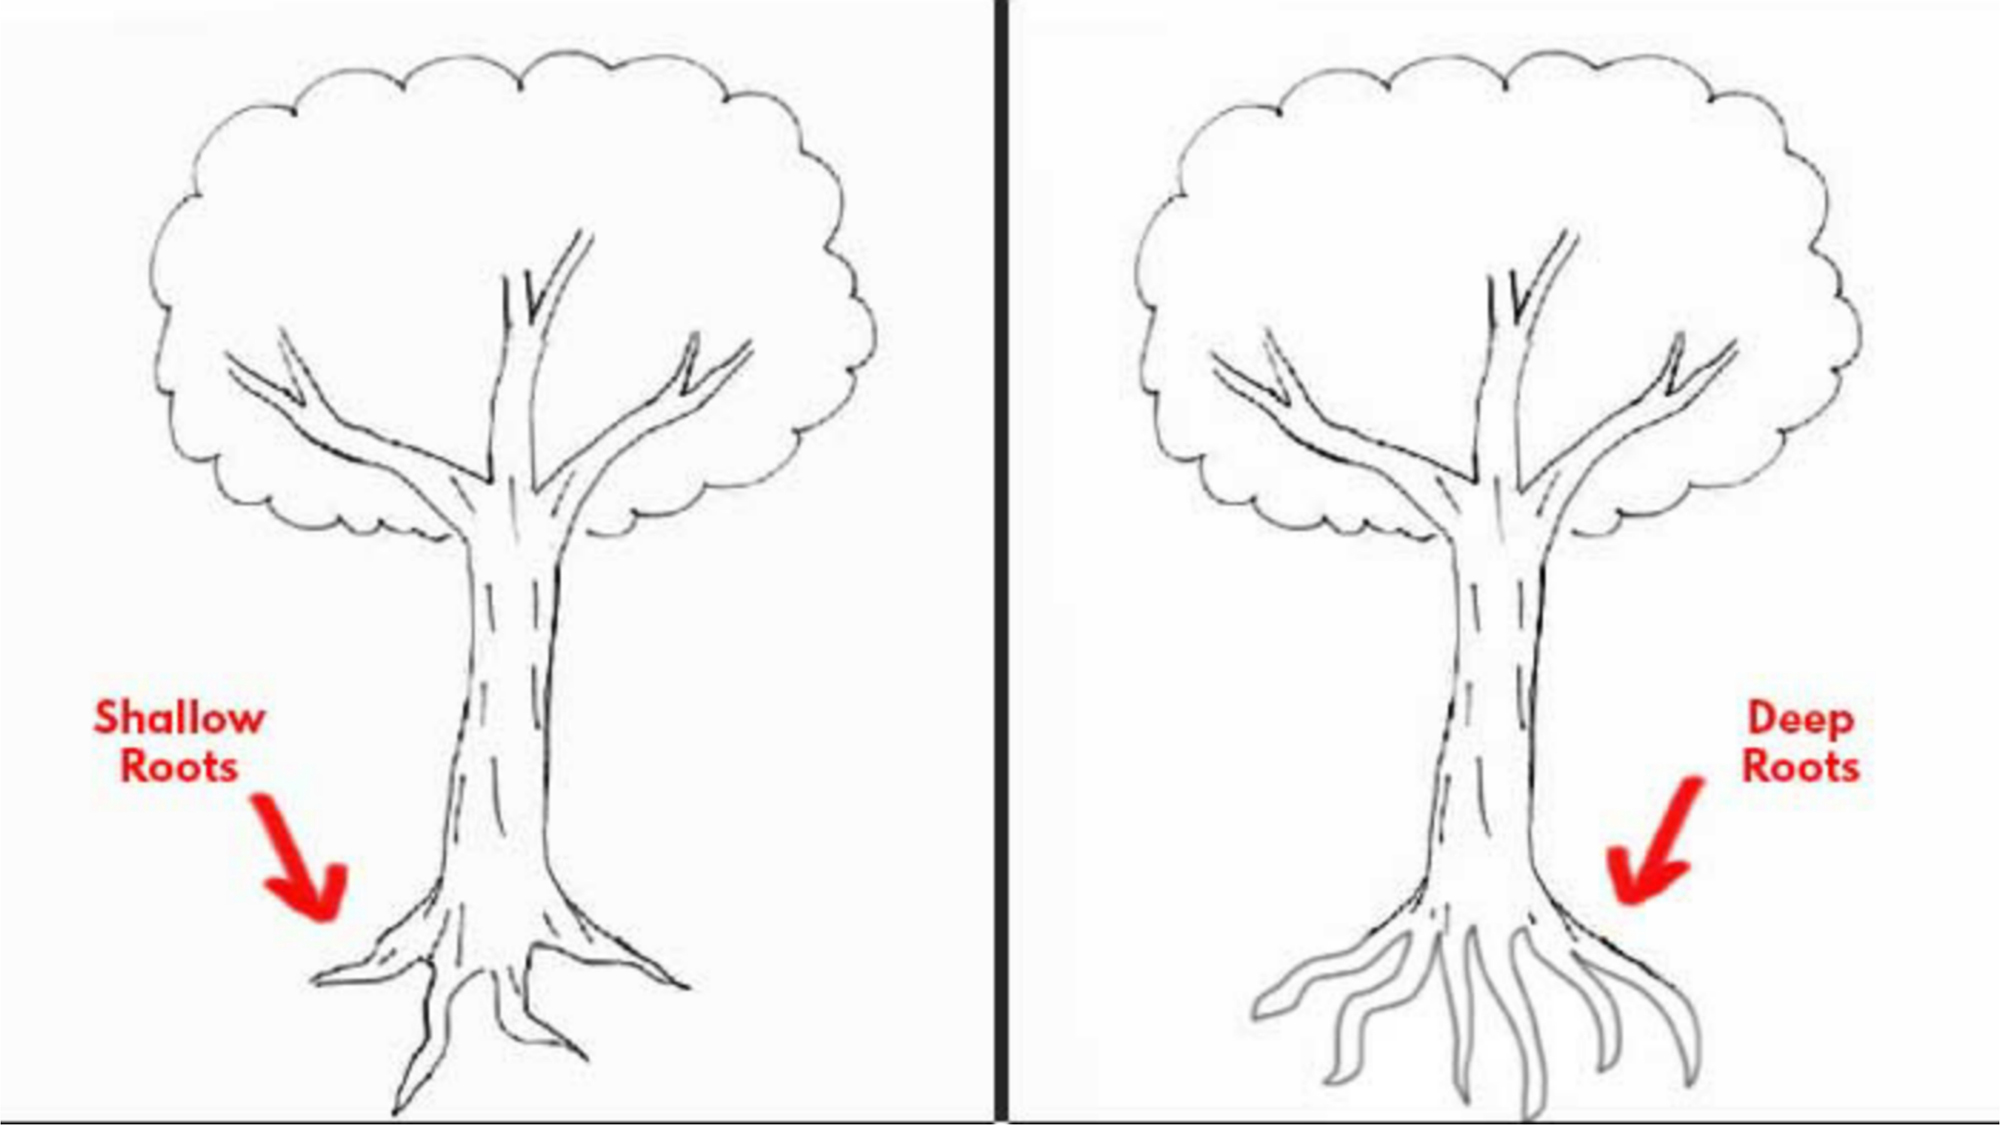 Bạn yêu thích vẽ tranh nhưng không hề biết bắt đầu từ đâu? Trắc nghiệm vẽ cây sẽ giúp bạn phát triển sự sáng tạo cũng như kỹ năng vẽ của mình. Hãy thử và tìm hiểu thêm bằng cách xem hình ảnh.